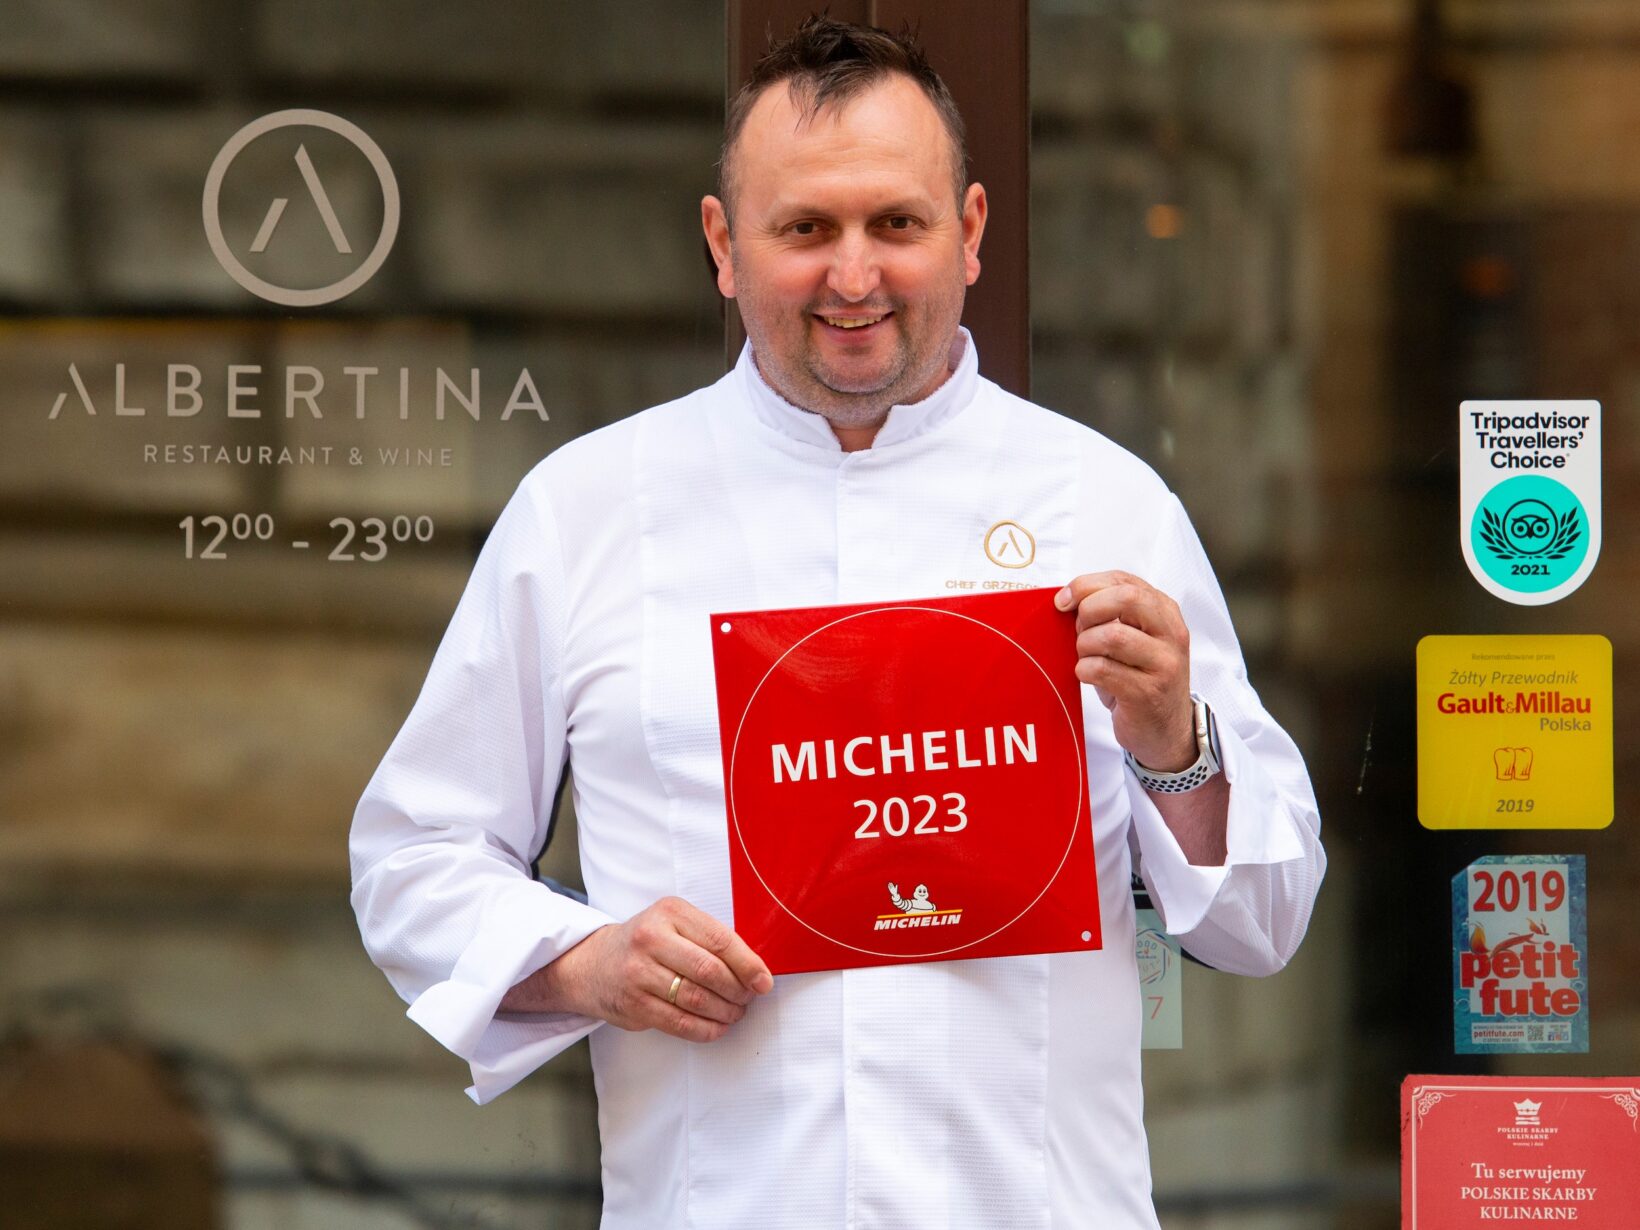 Albertina Restaurant & Wine po raz kolejny z rekomendacją Przewodnika Michelin